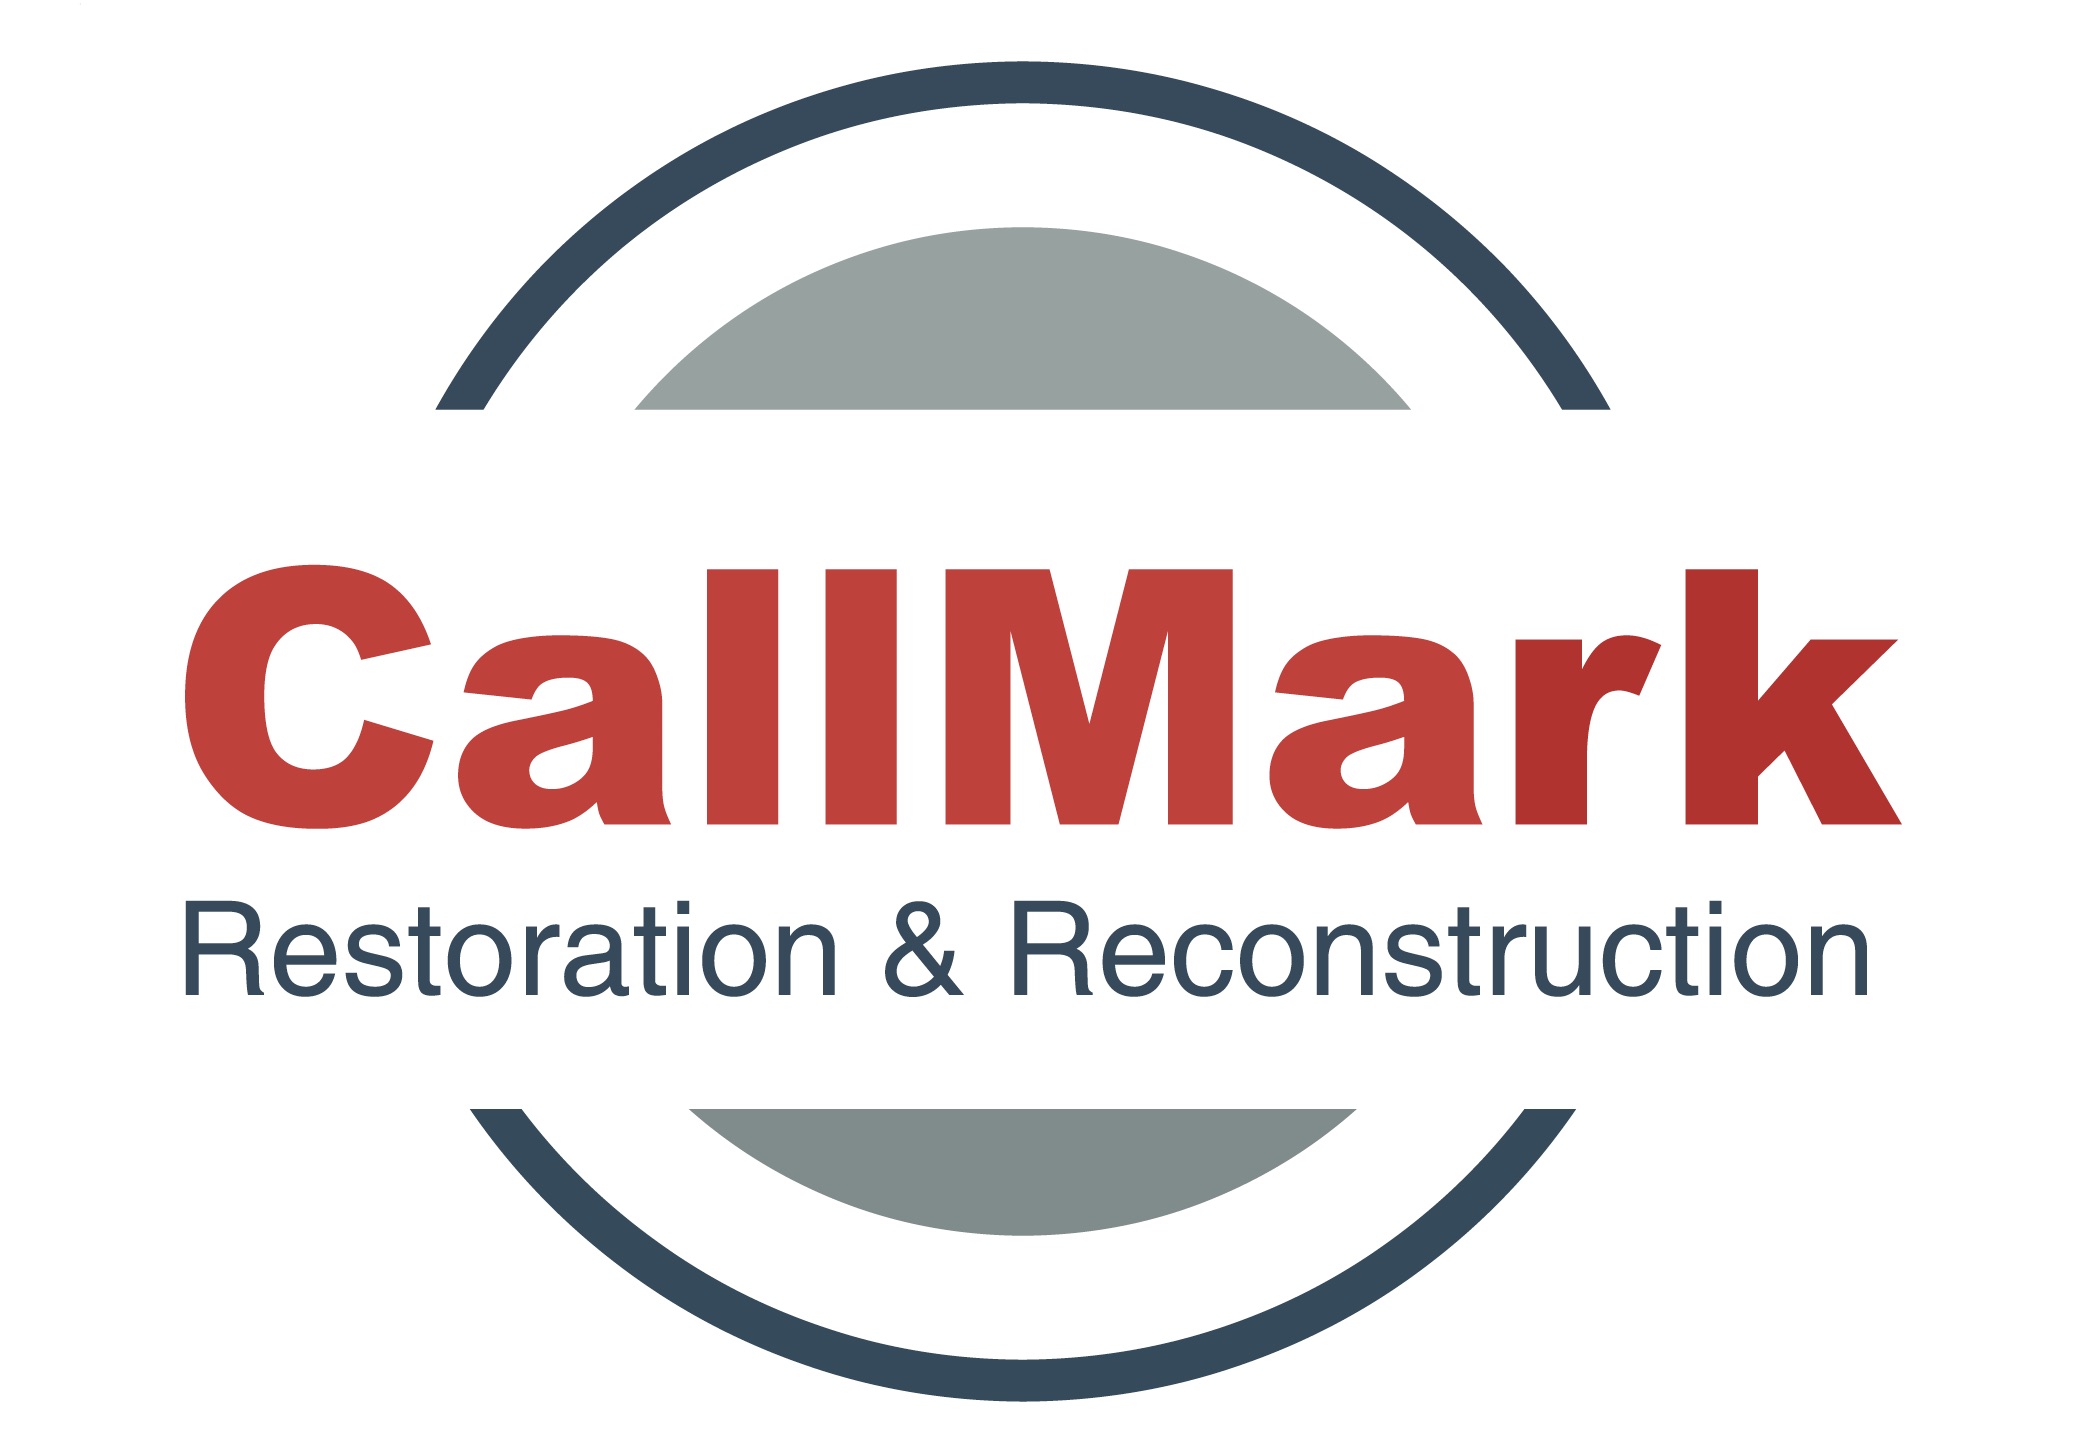 Callmark